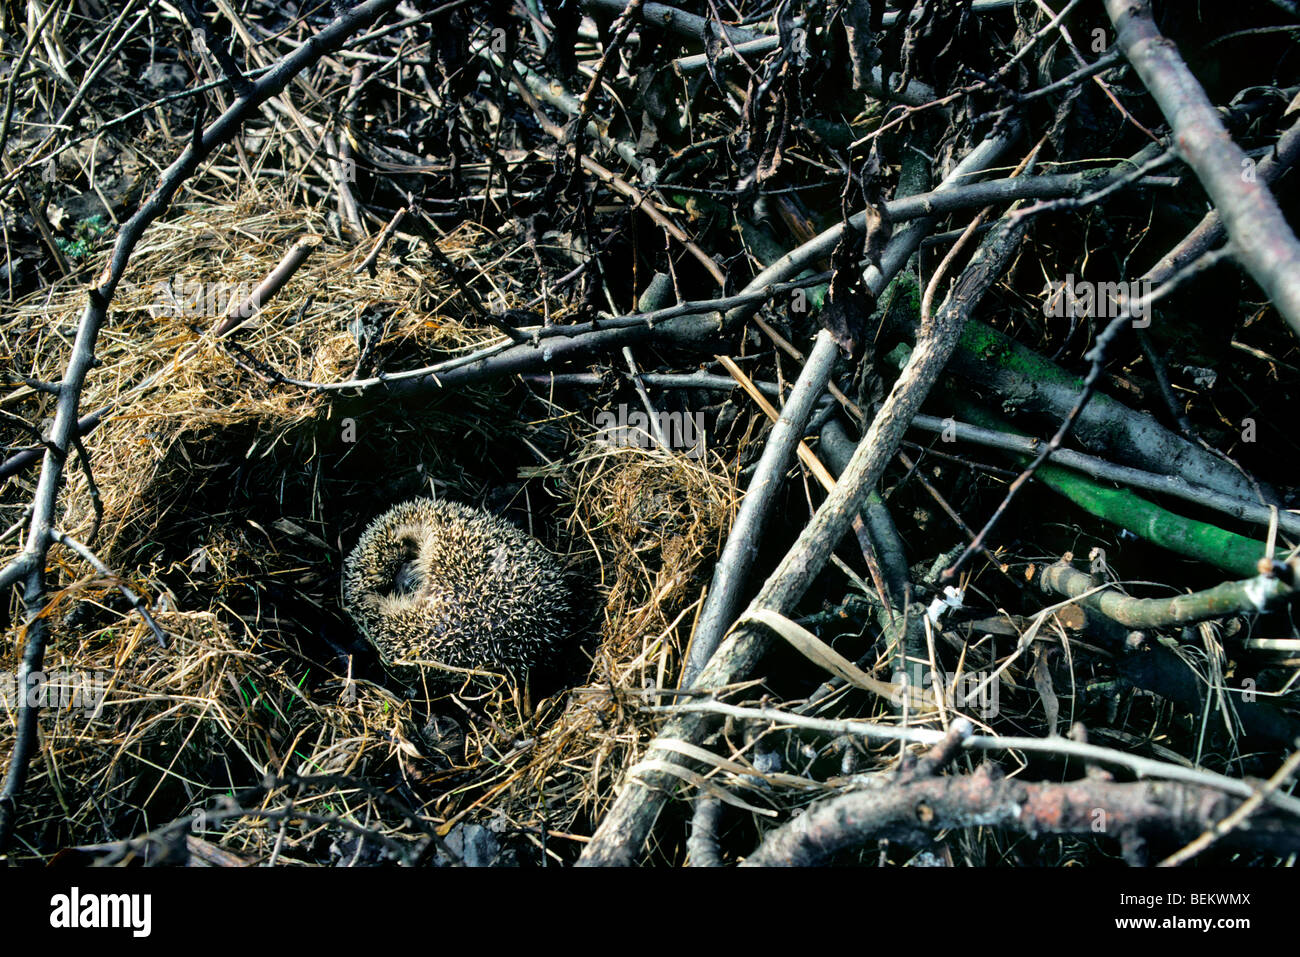 Hérisson européen (Erinaceus europaeus) hibernant dans nid parmi la végétation dans jardin Banque D'Images